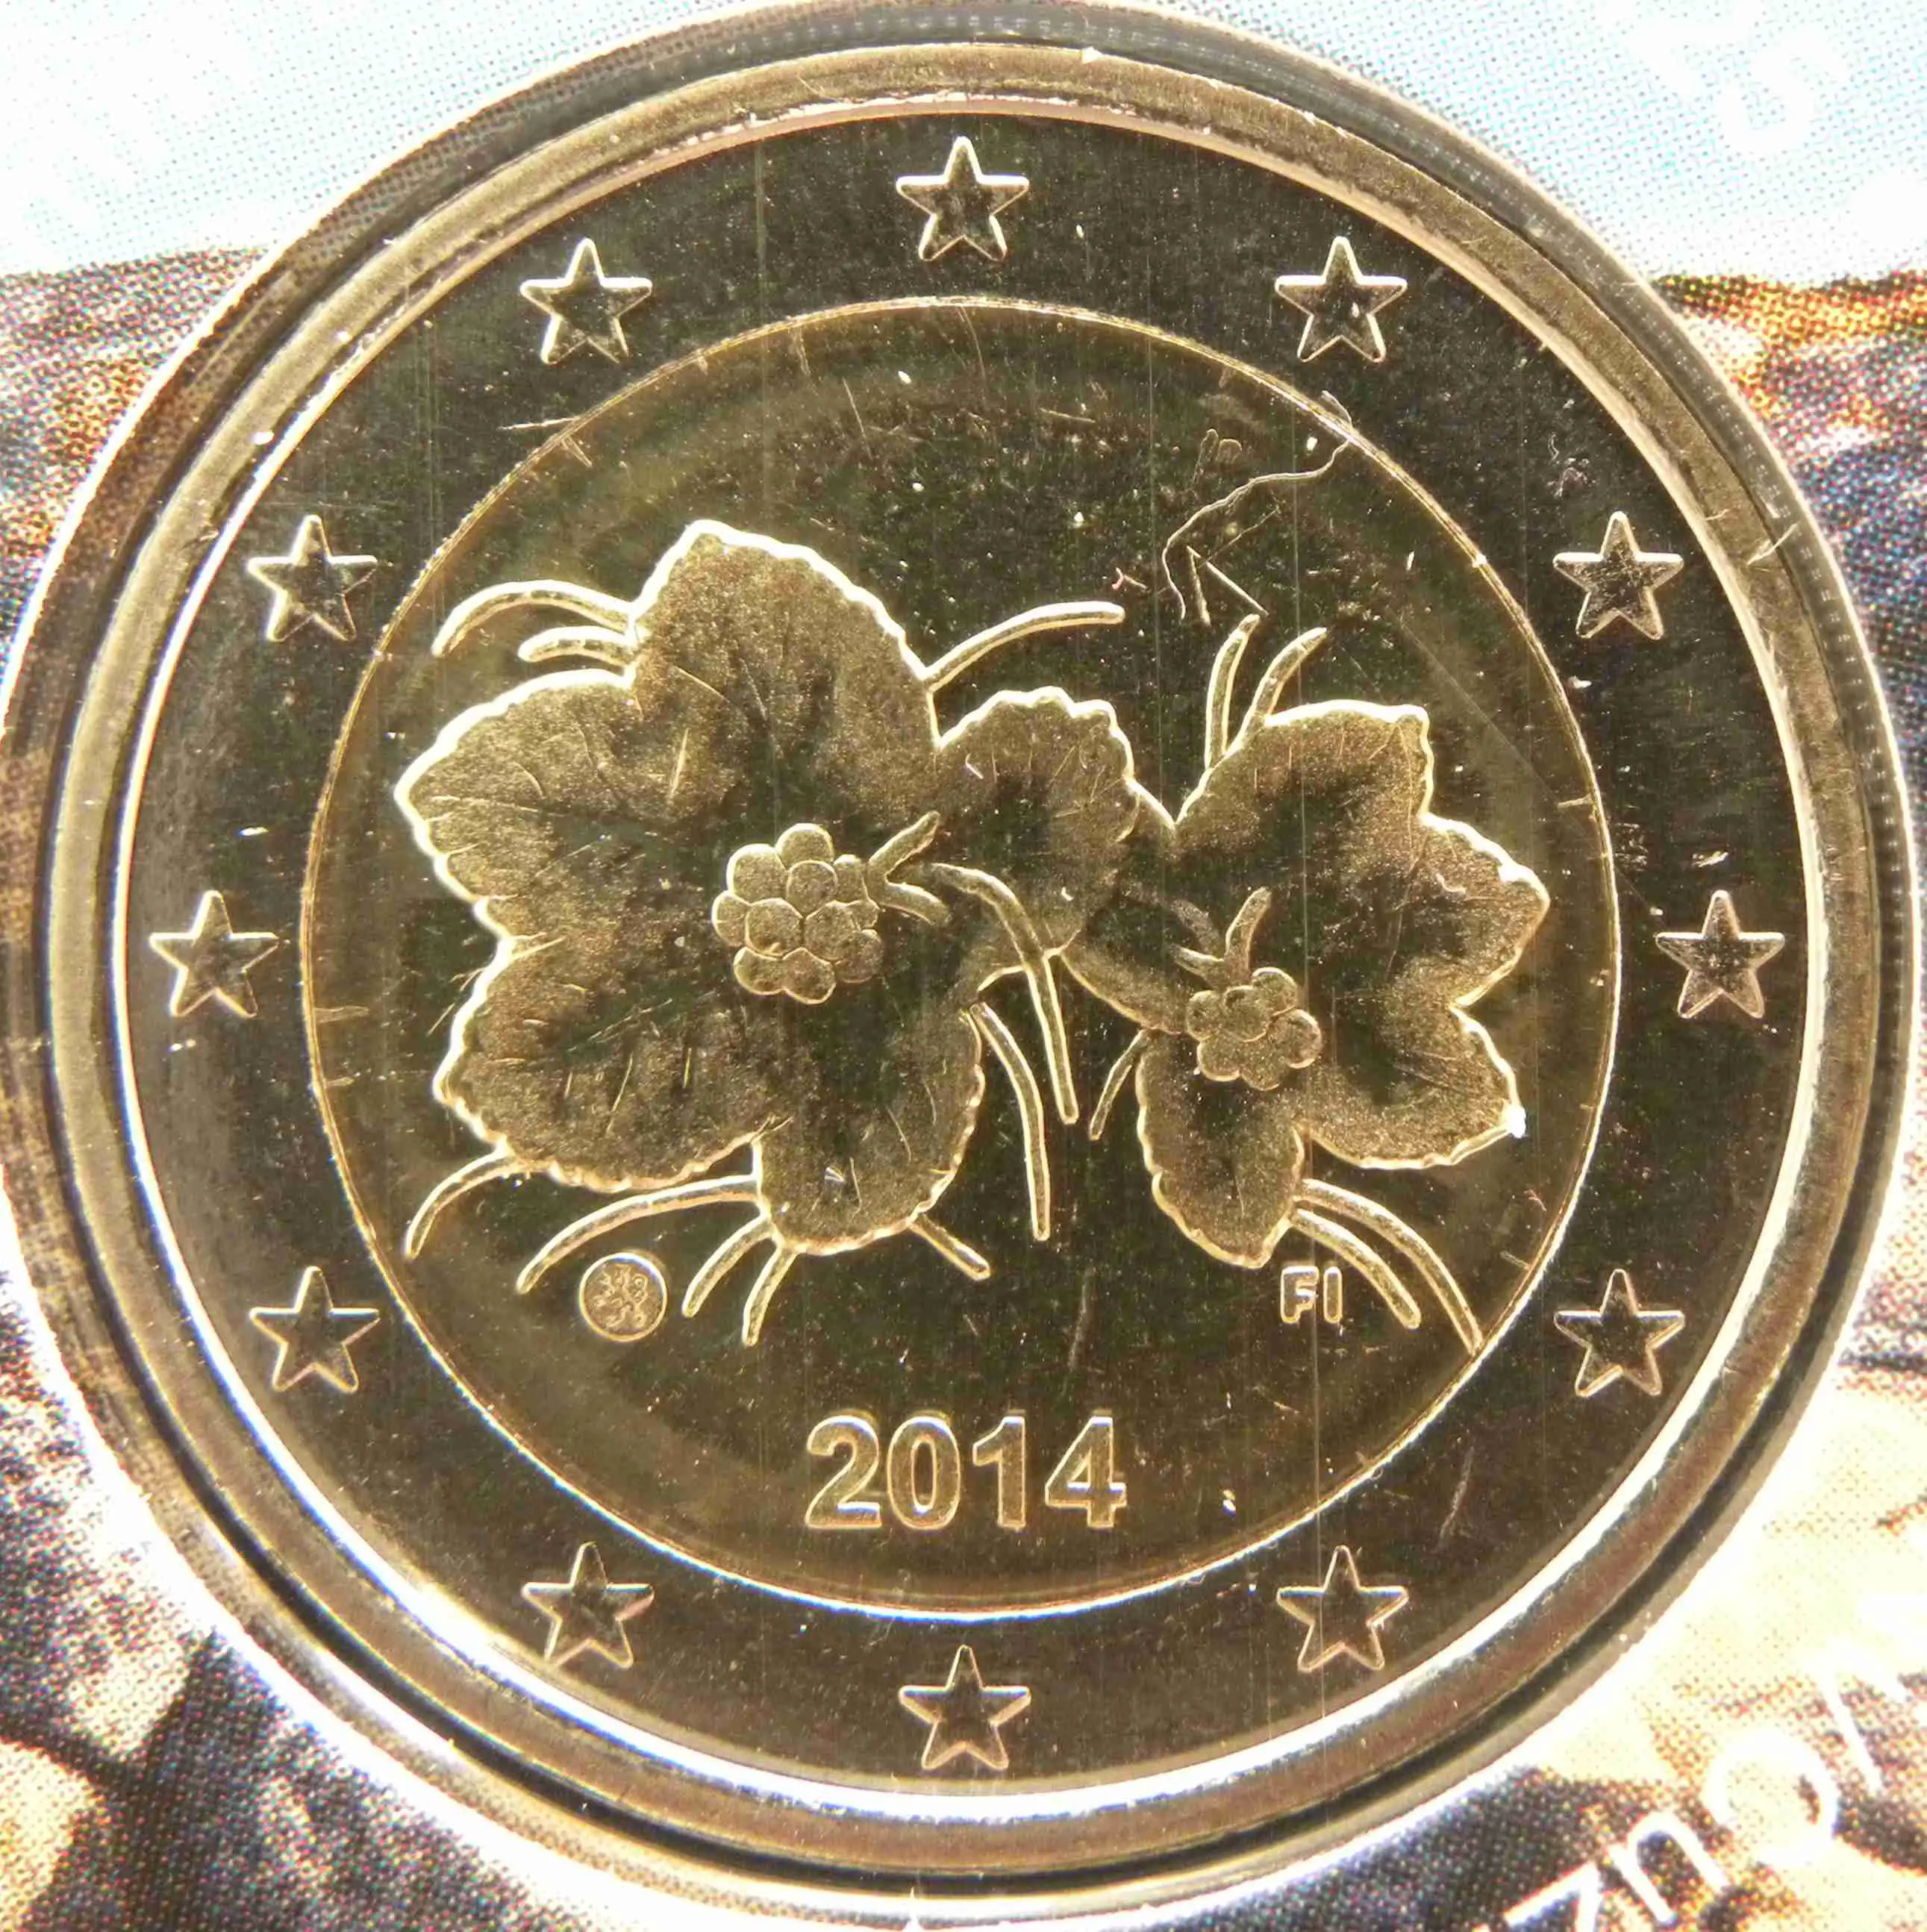 Finnland 2 Euro Münze 2014 - euro-muenzen.tv - Der Online Euromünzen